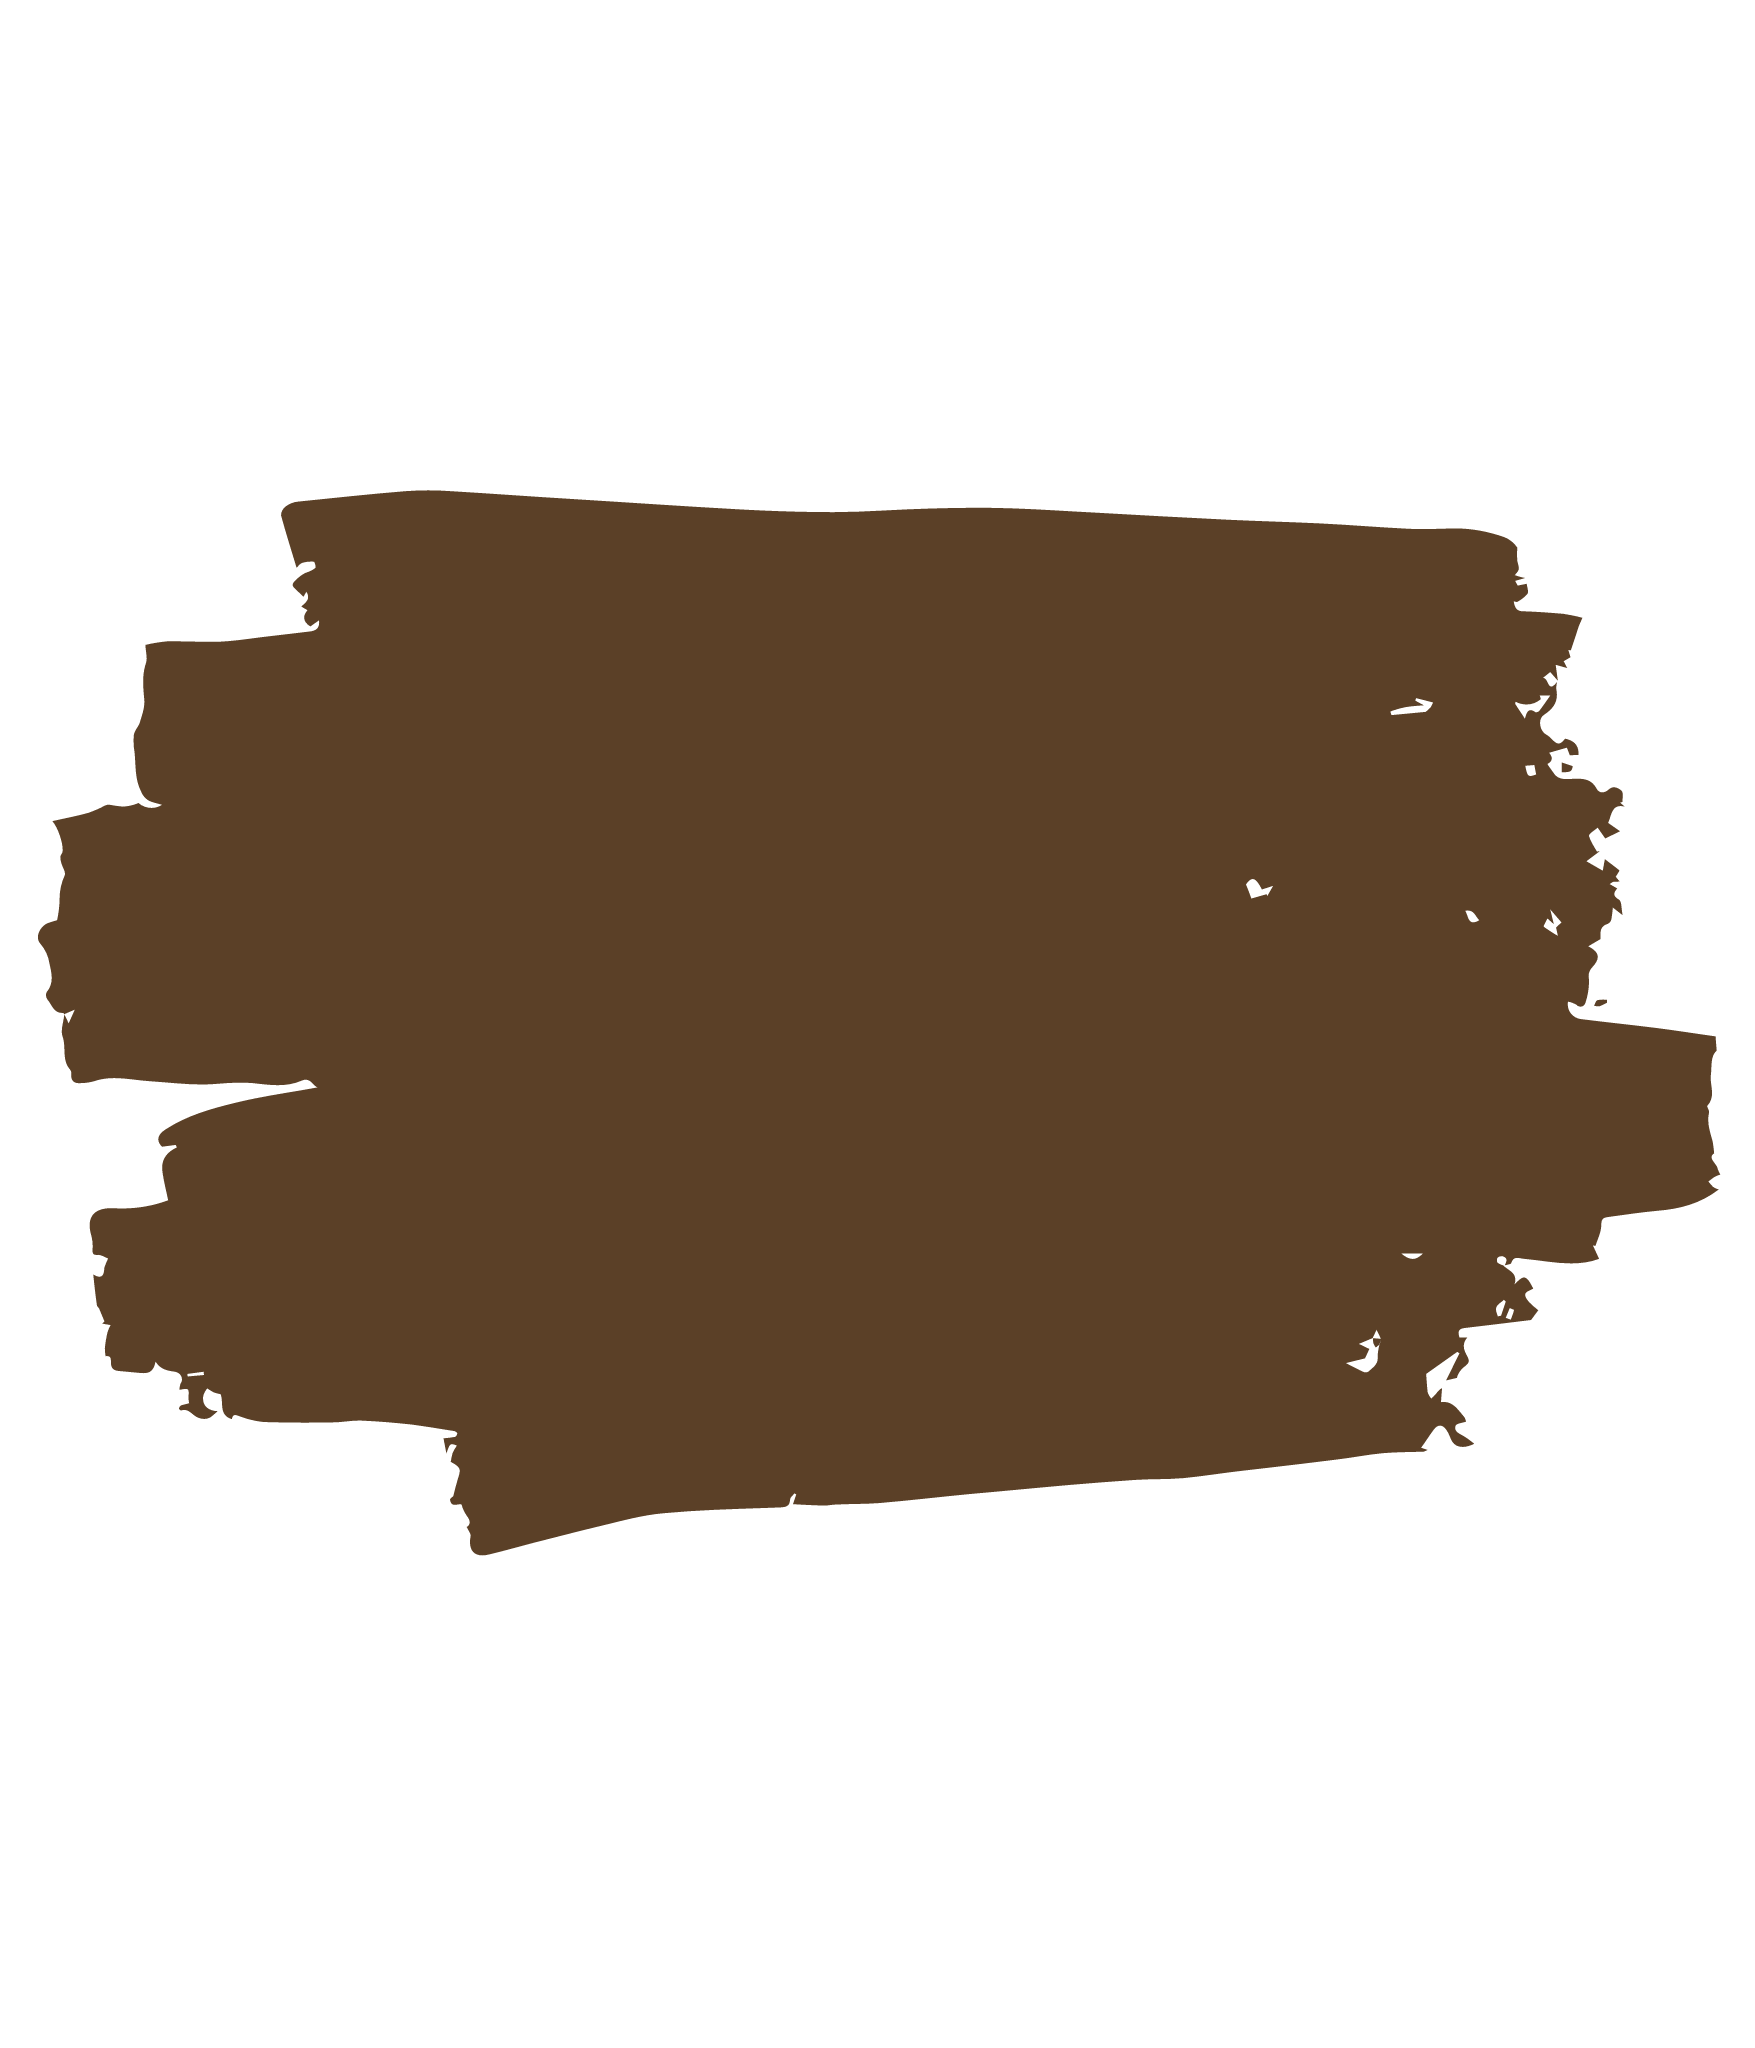 Color: Medium Brown